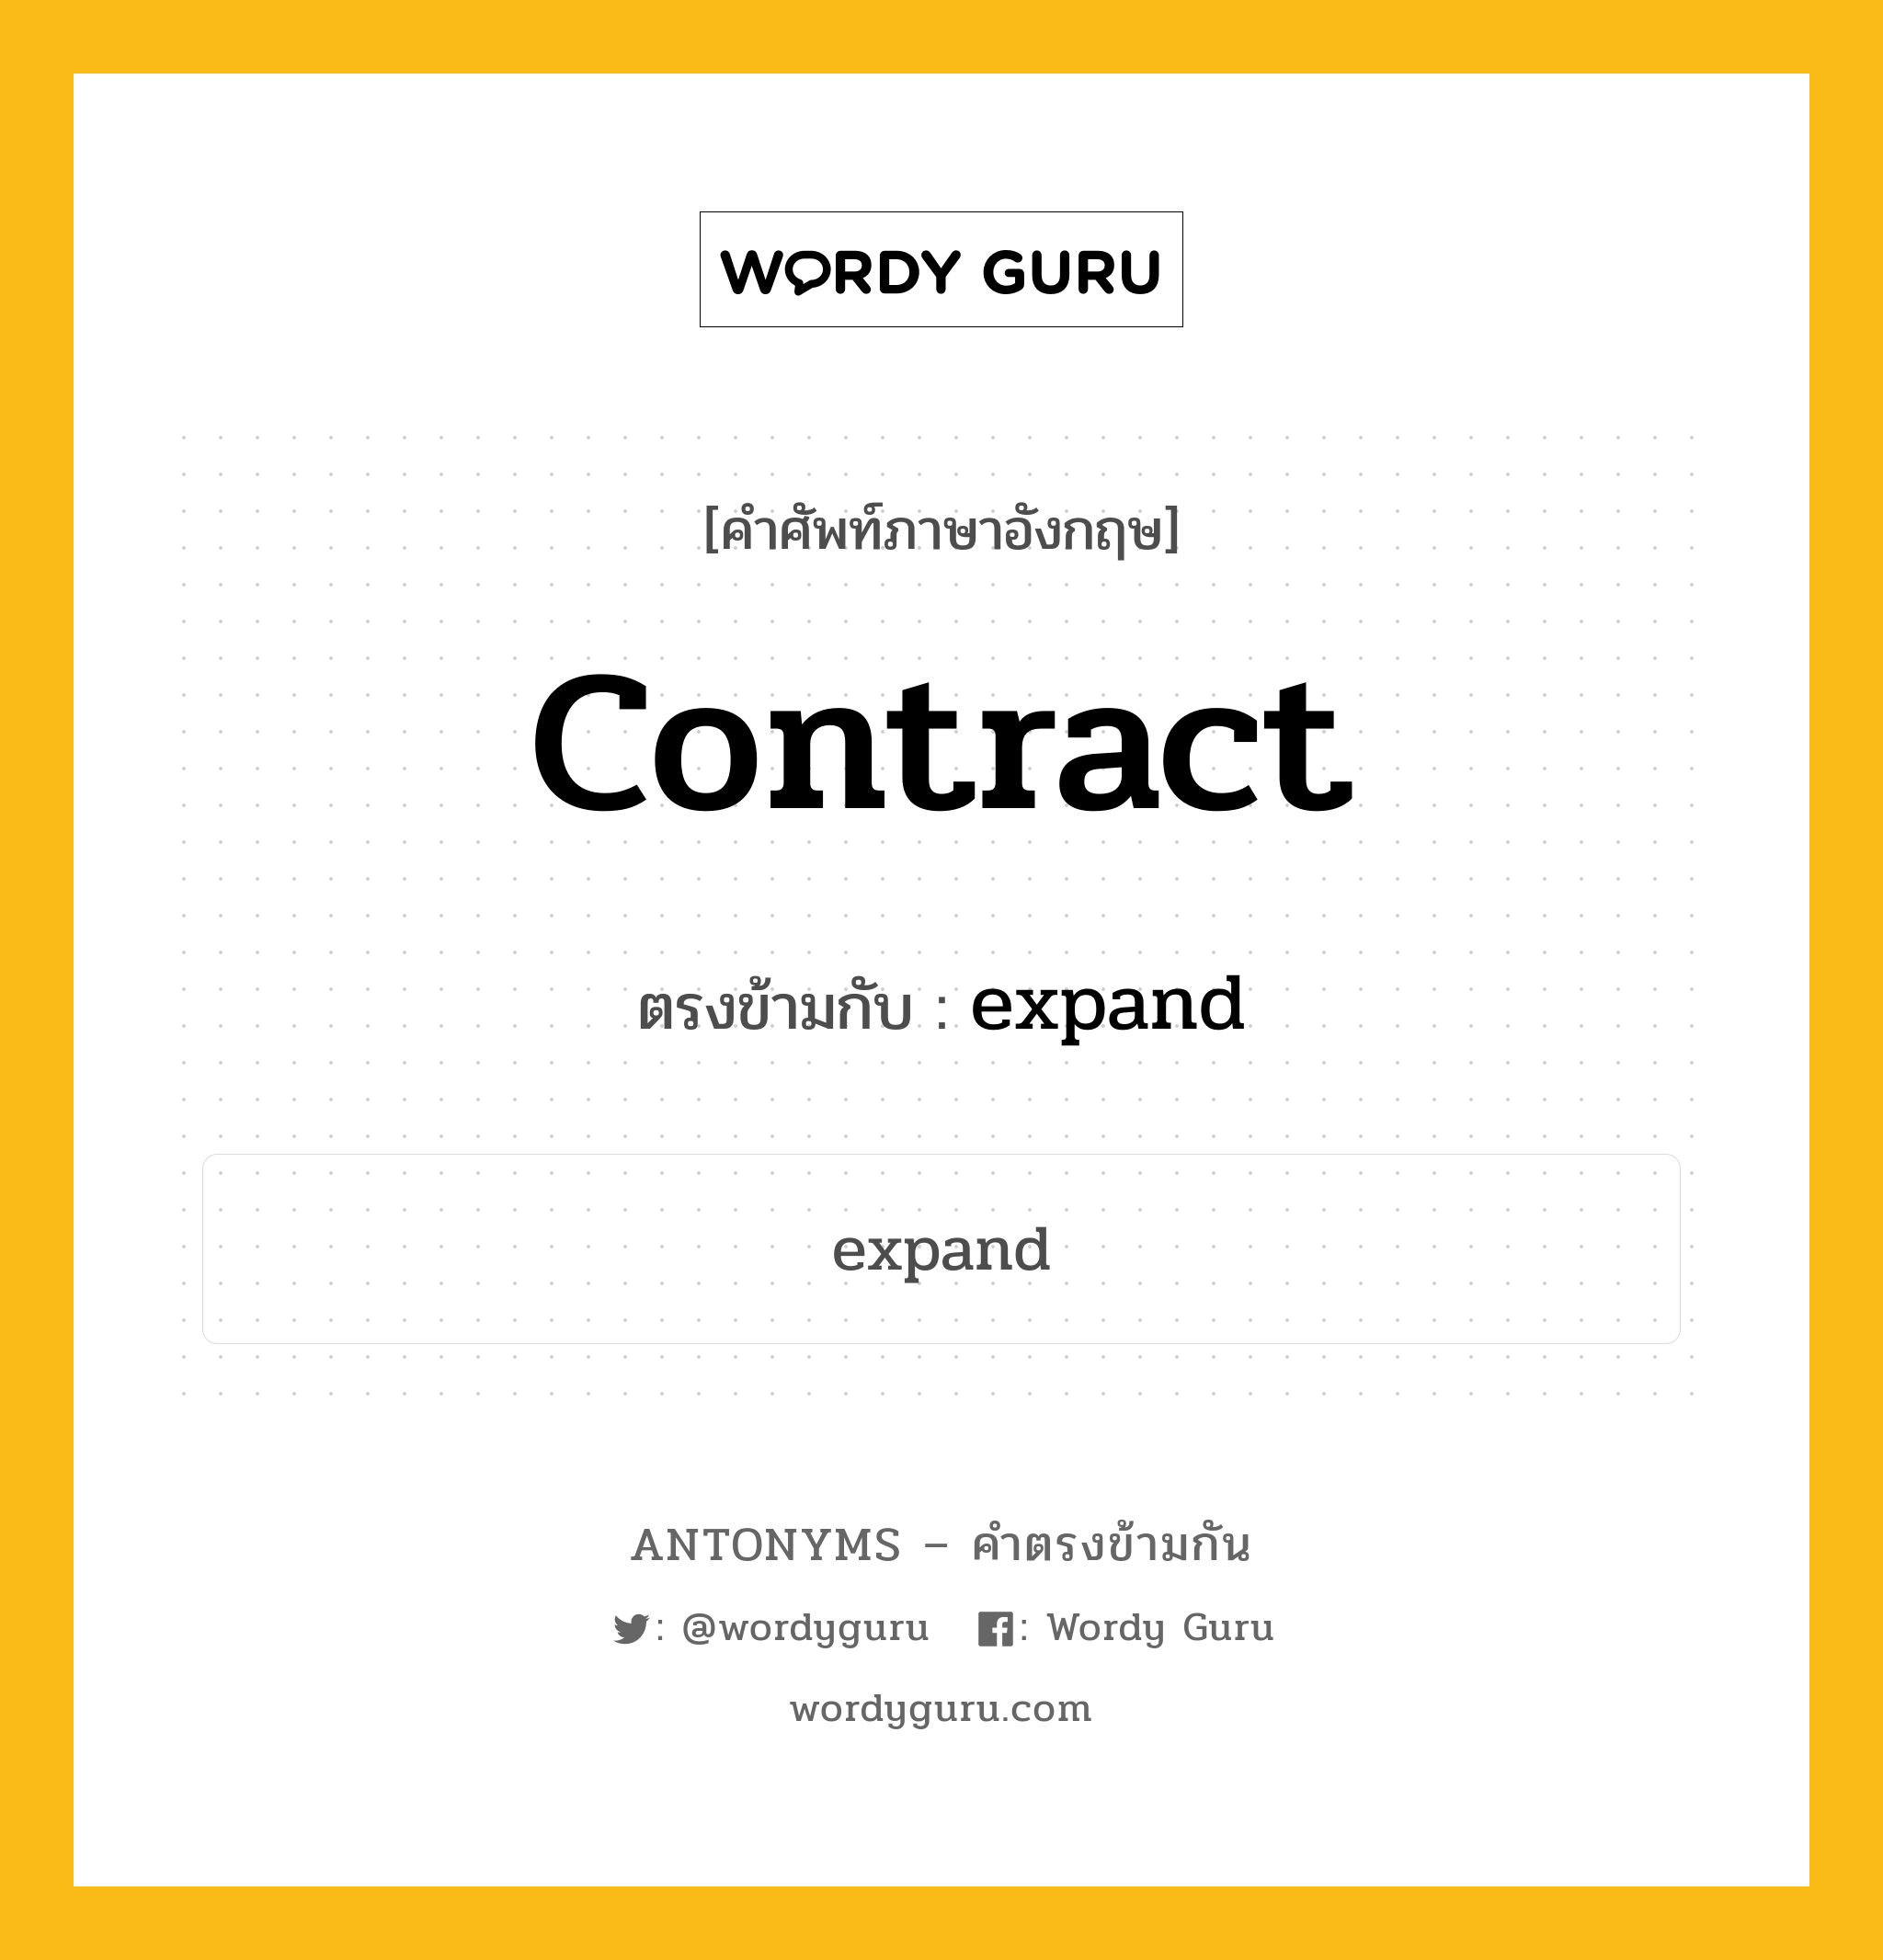 contract เป็นคำตรงข้ามกับคำไหนบ้าง?, คำศัพท์ภาษาอังกฤษ contract ตรงข้ามกับ expand หมวด expand